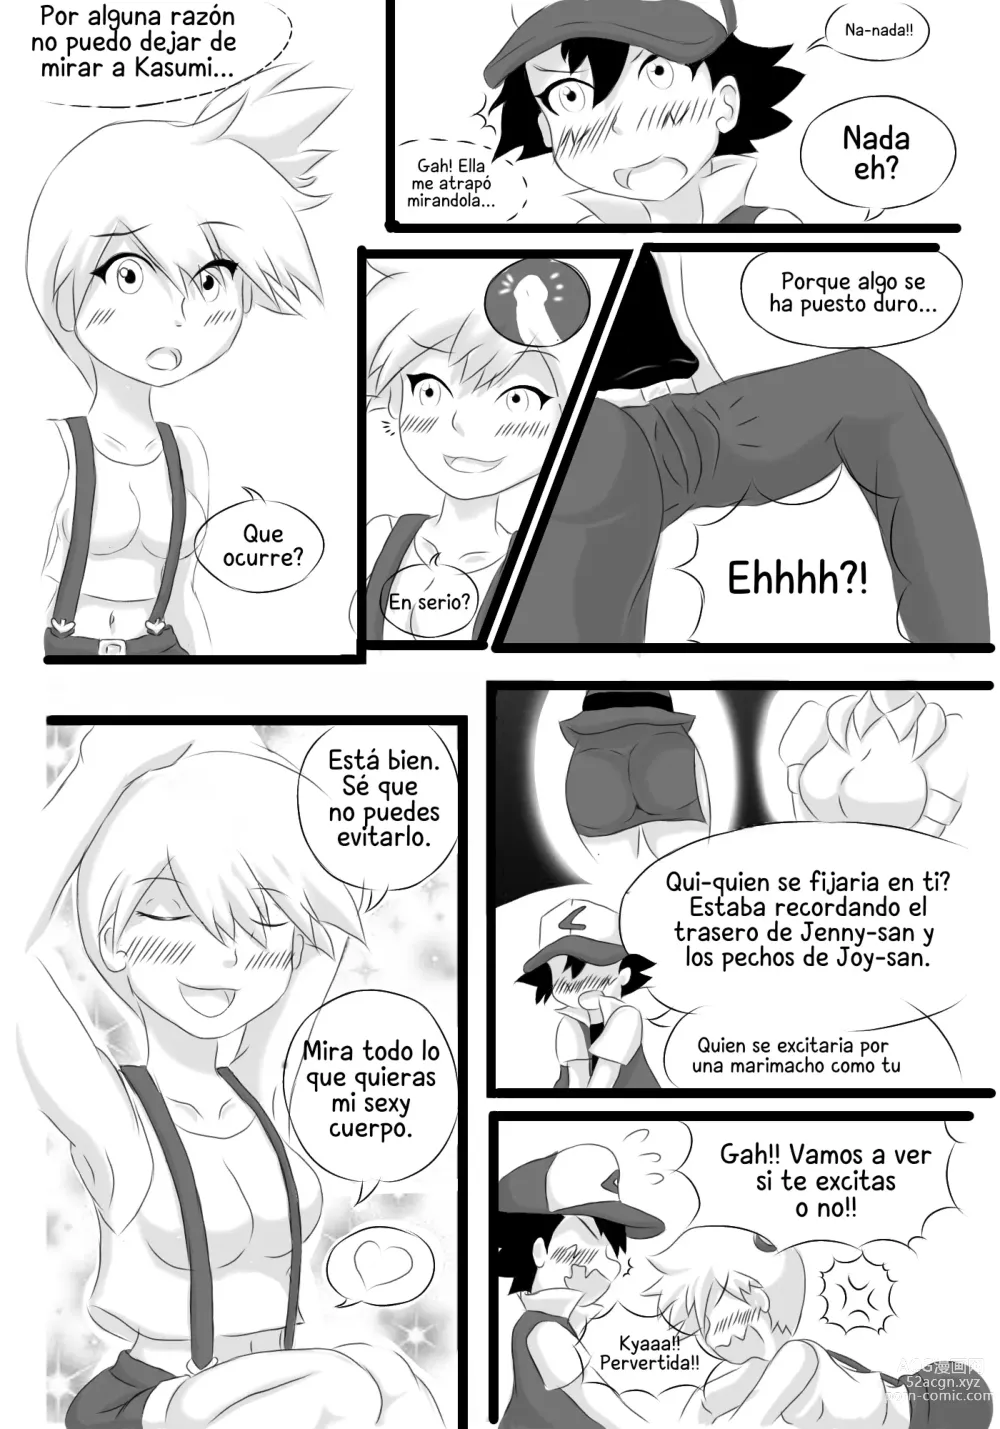 Page 3 of doujinshi Kasumi and Satoshi